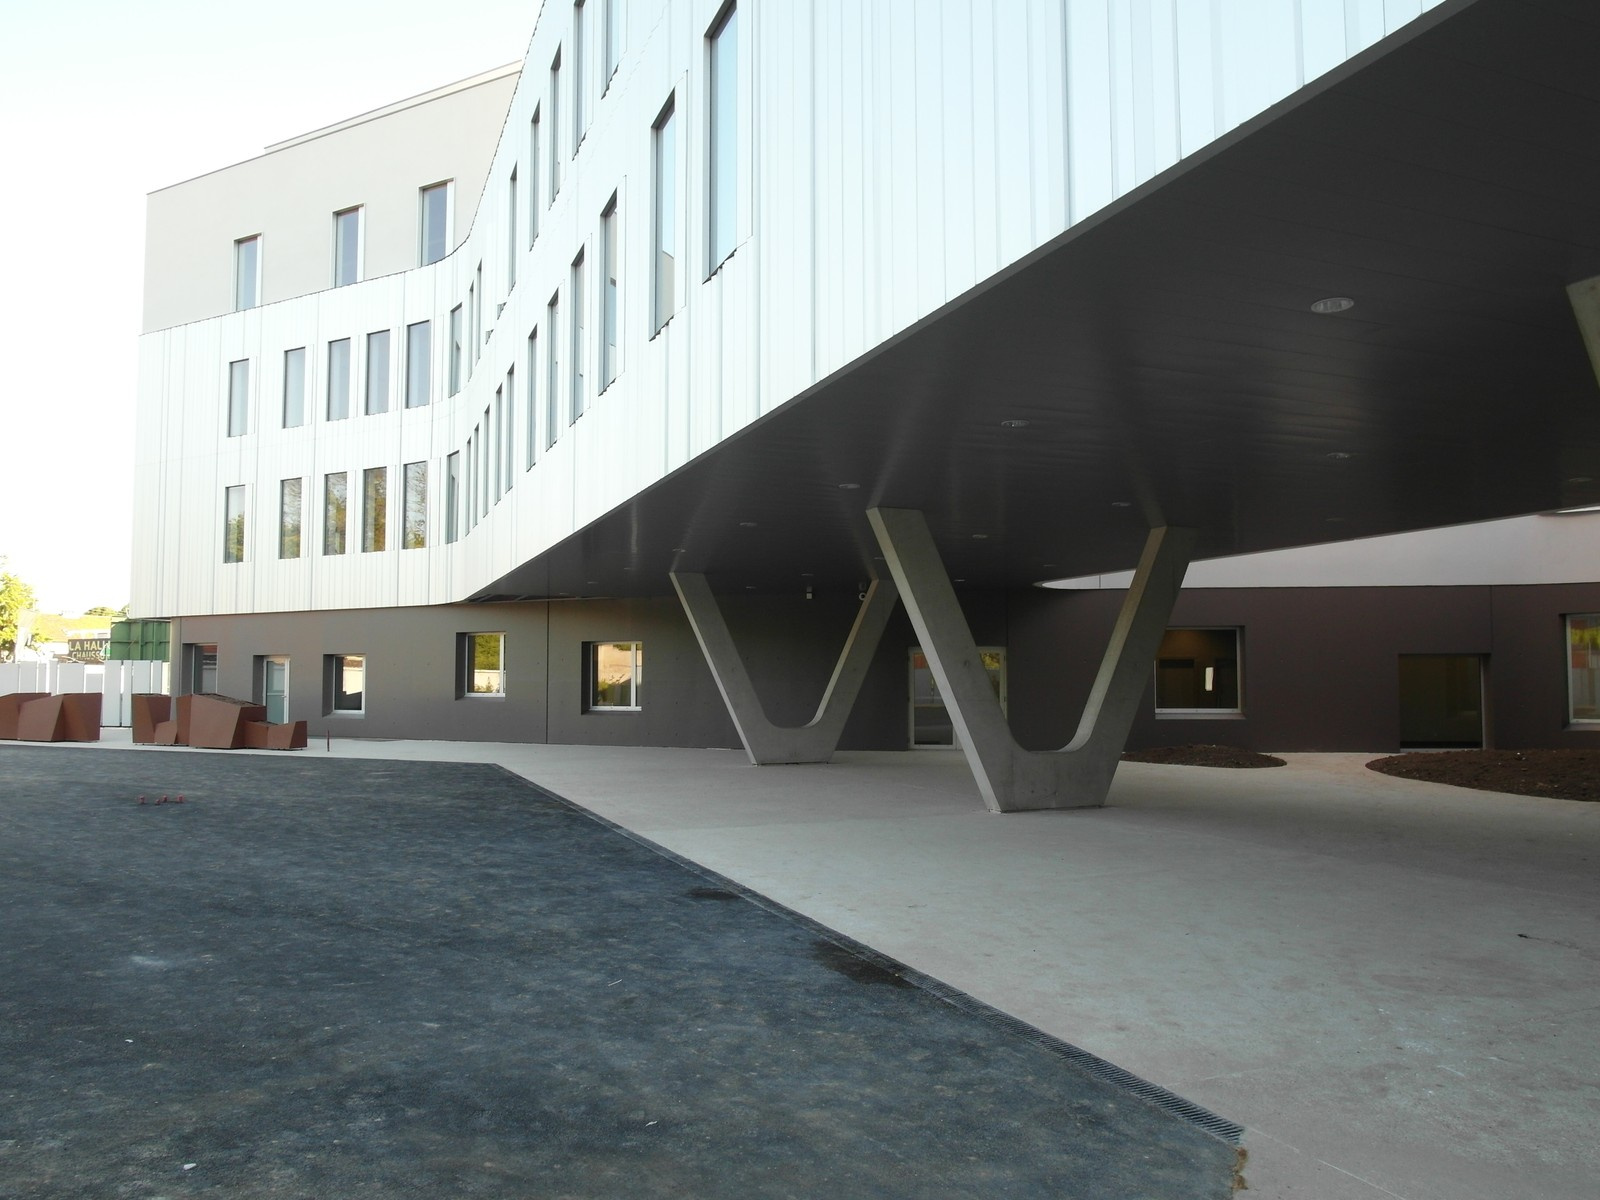 École hôtelière Ferrandi Image 1